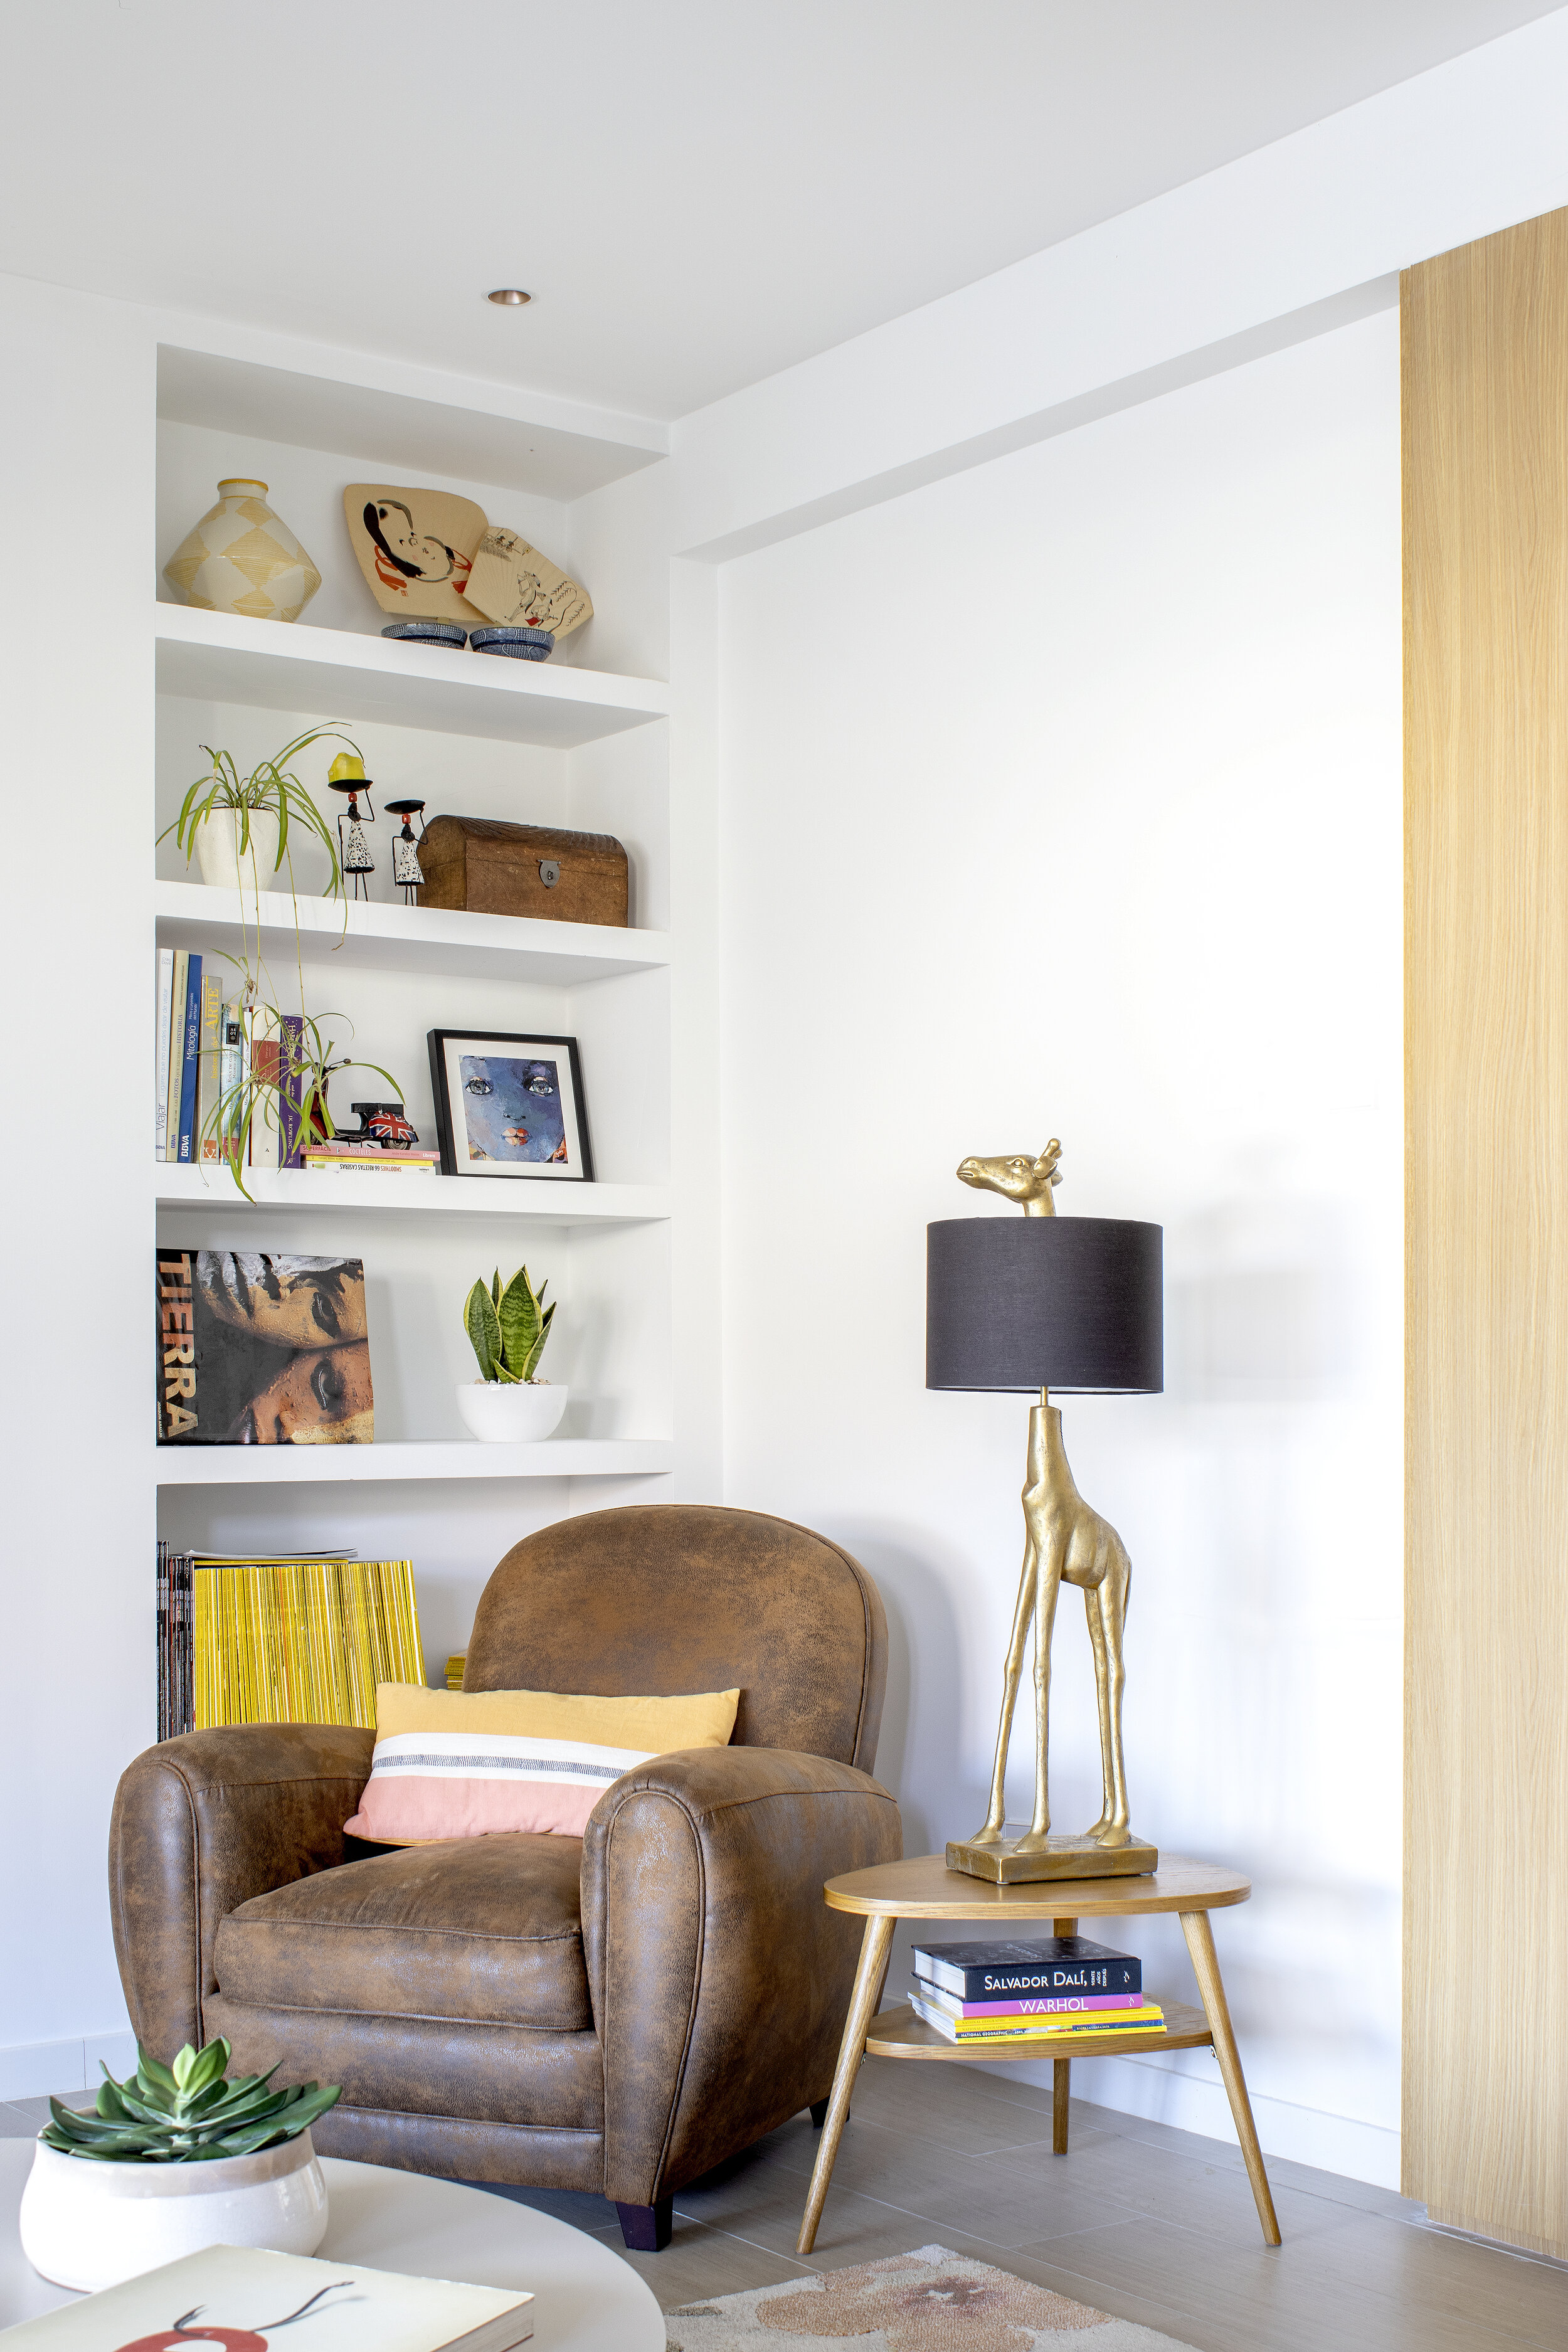 diseño interiores madrid interiorismo integral emmme studio ricon de lectura mobiliario a medida barrio de las letras Juanfe y Montse.jpg